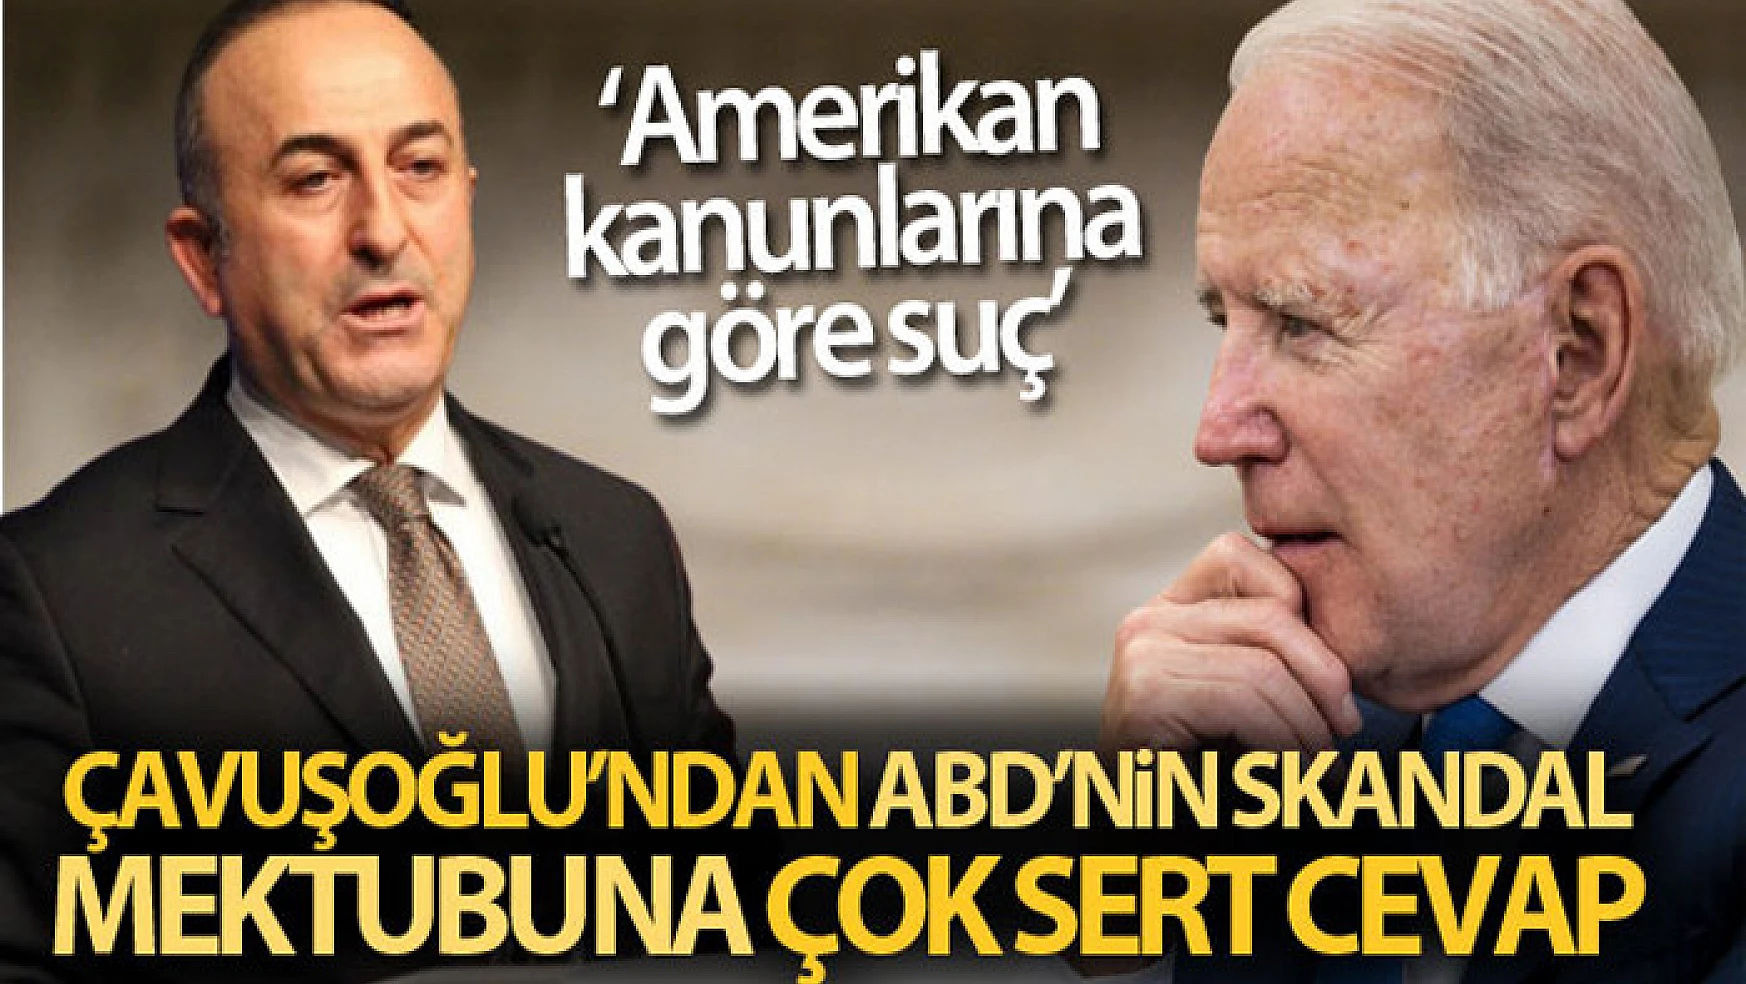 Dışişleri Bakanı Çavuşoğlu: ABD, Türkiye'yi suçlamak yerine kendi yanlış politikalarından vazgeçsin